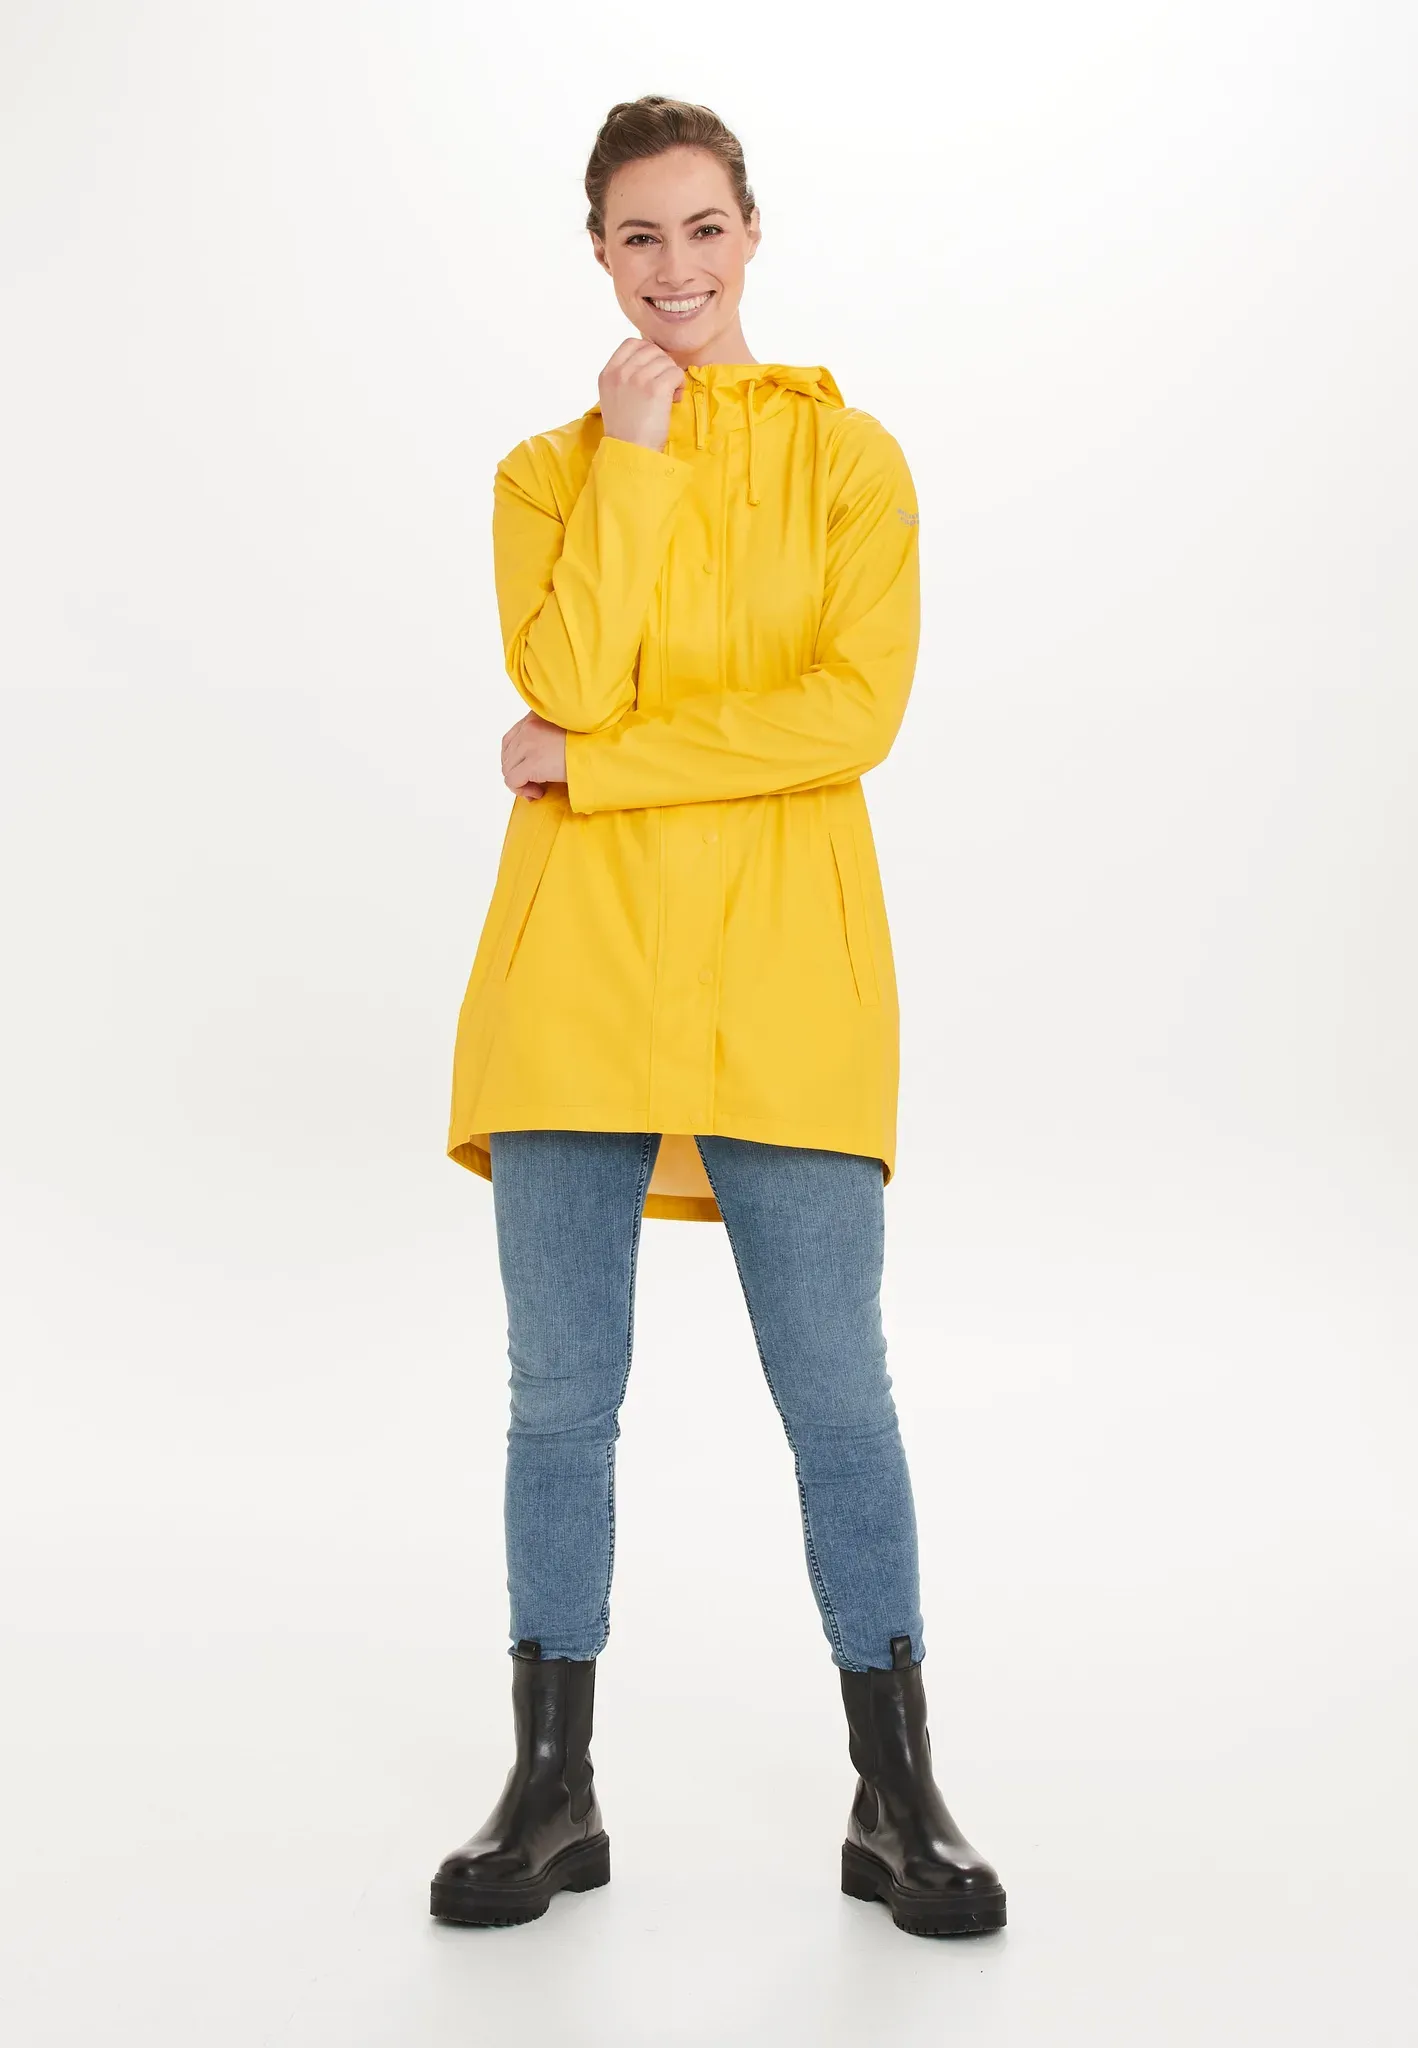 Regenjacke WEATHER REPORT "PETRA" Gr. 44, gelb (sun) Damen Jacken Sportjacken mit umweltfreundlicher Beschichtung